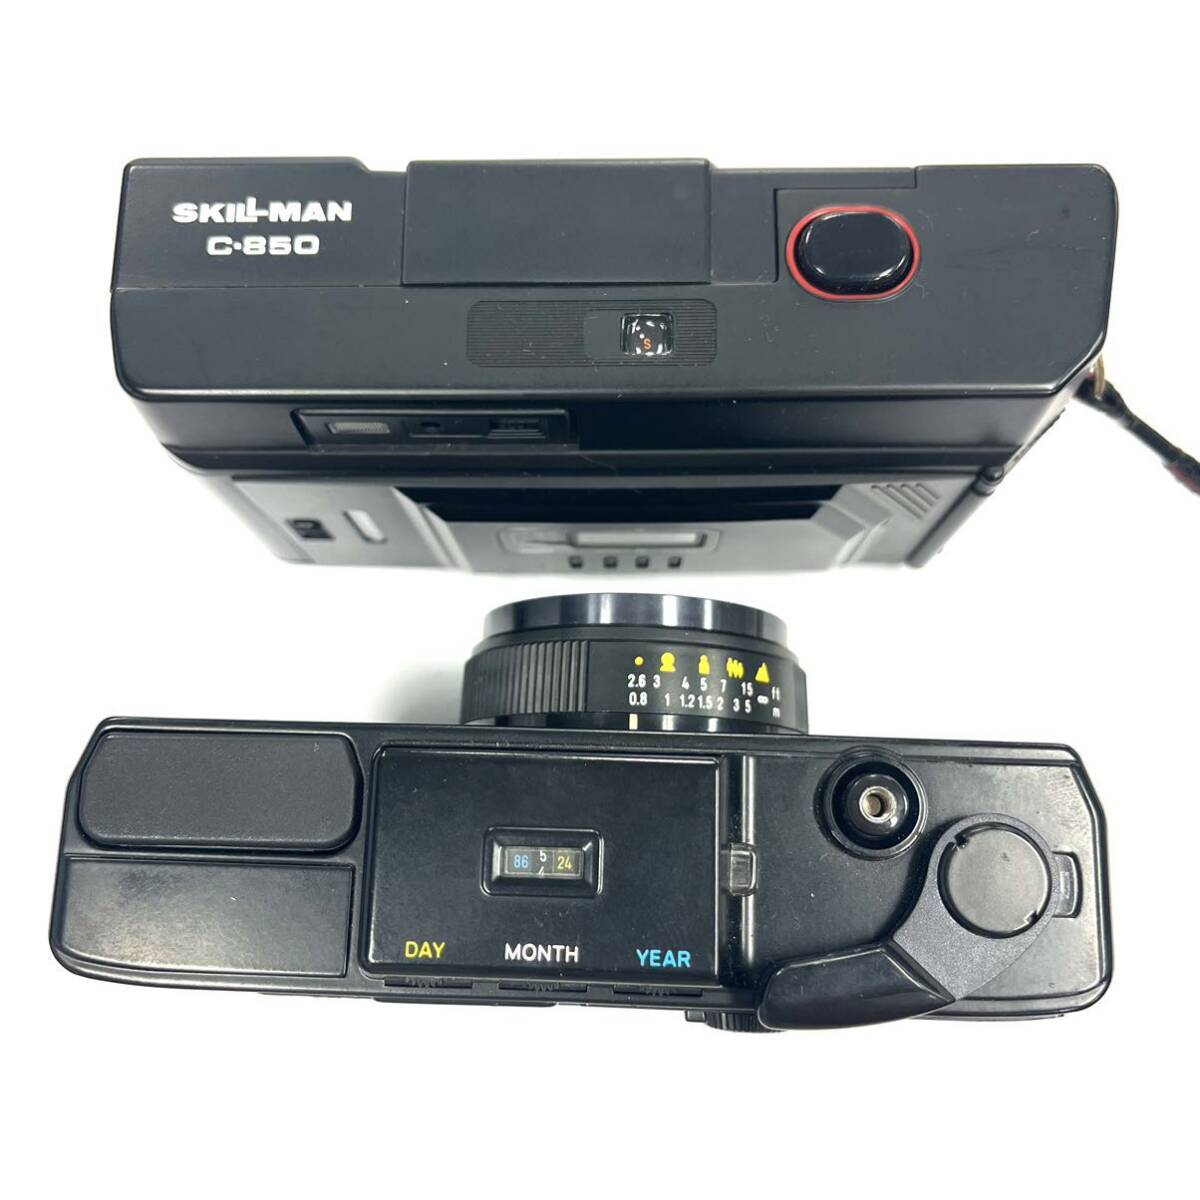 N414 フィルムカメラ まとめ MINOLTA ミノルタ HI-MATIC SD SKILL MAN C-850 ジャンク品 中古 訳あり